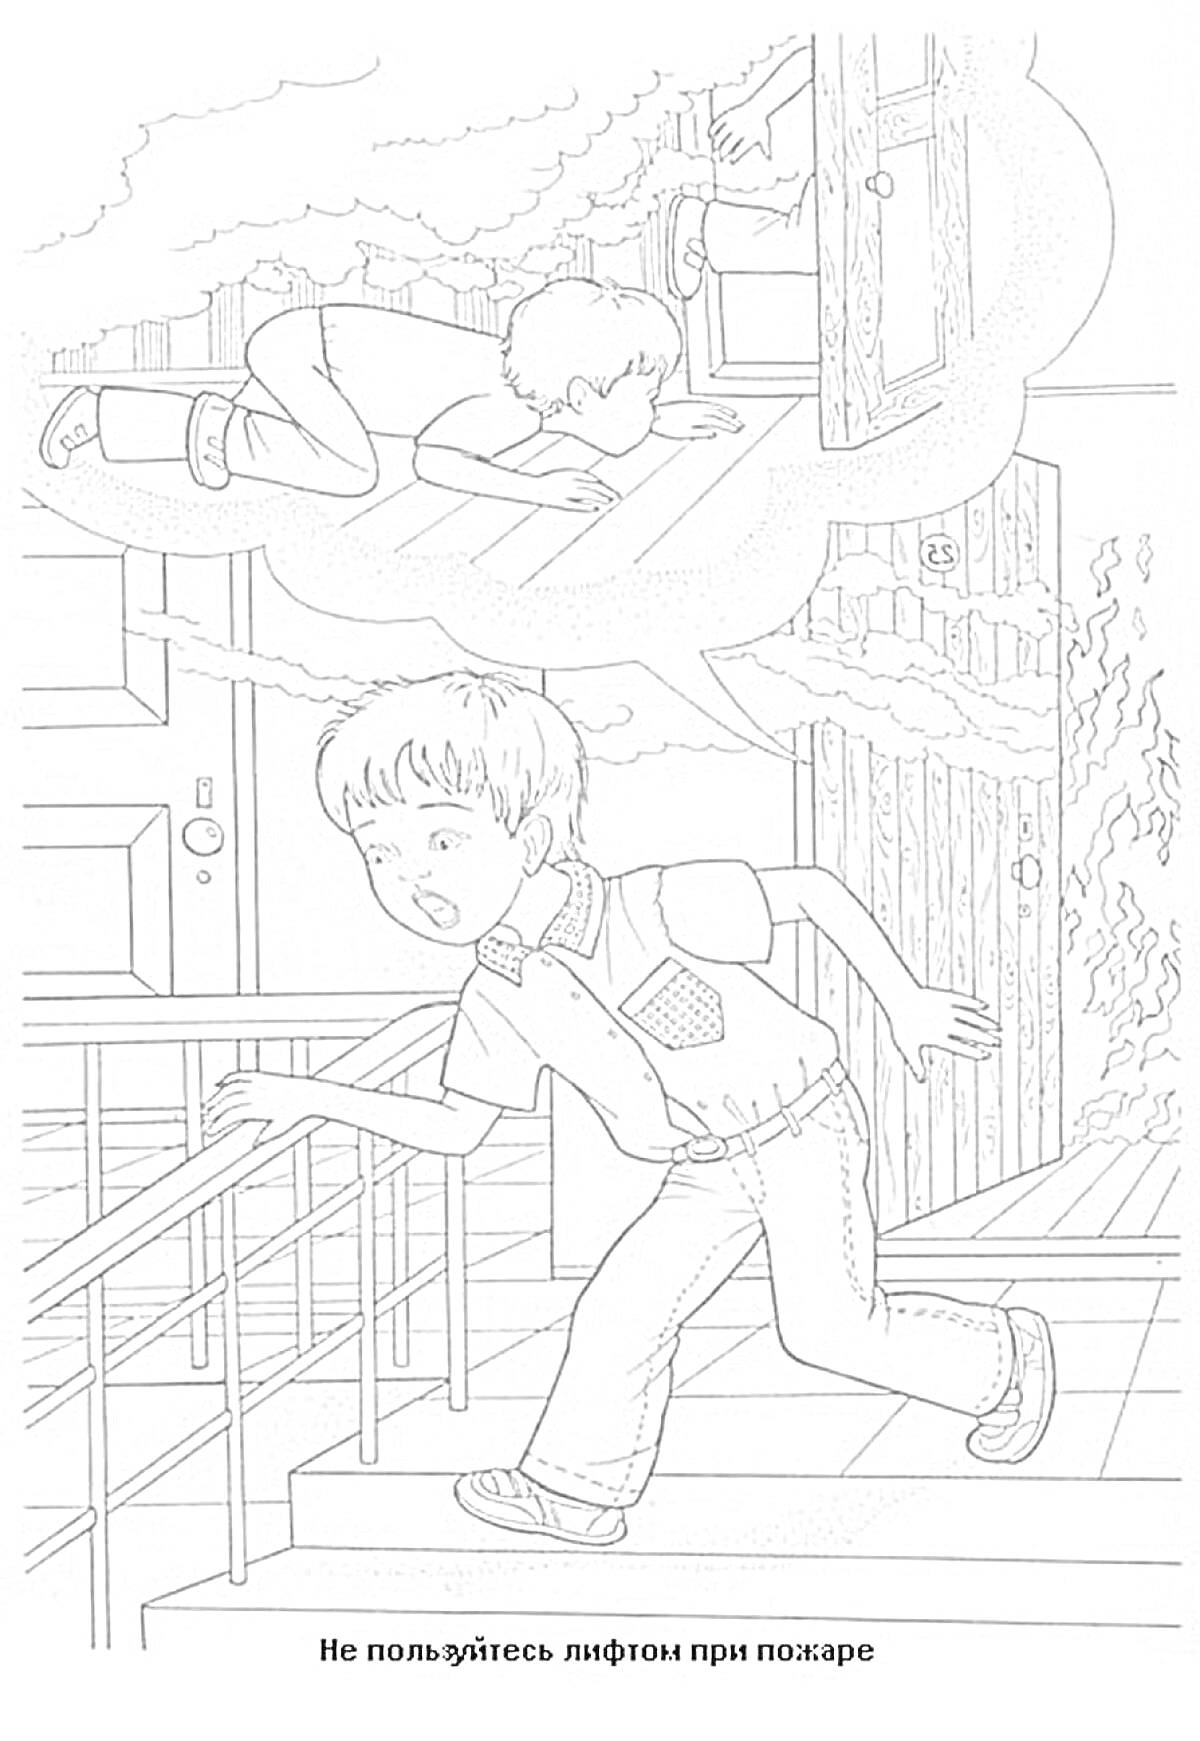 Мальчик сбегает вниз по лестнице во время пожара, мысли о правильном поведении лежа на полу и закрывая лицо